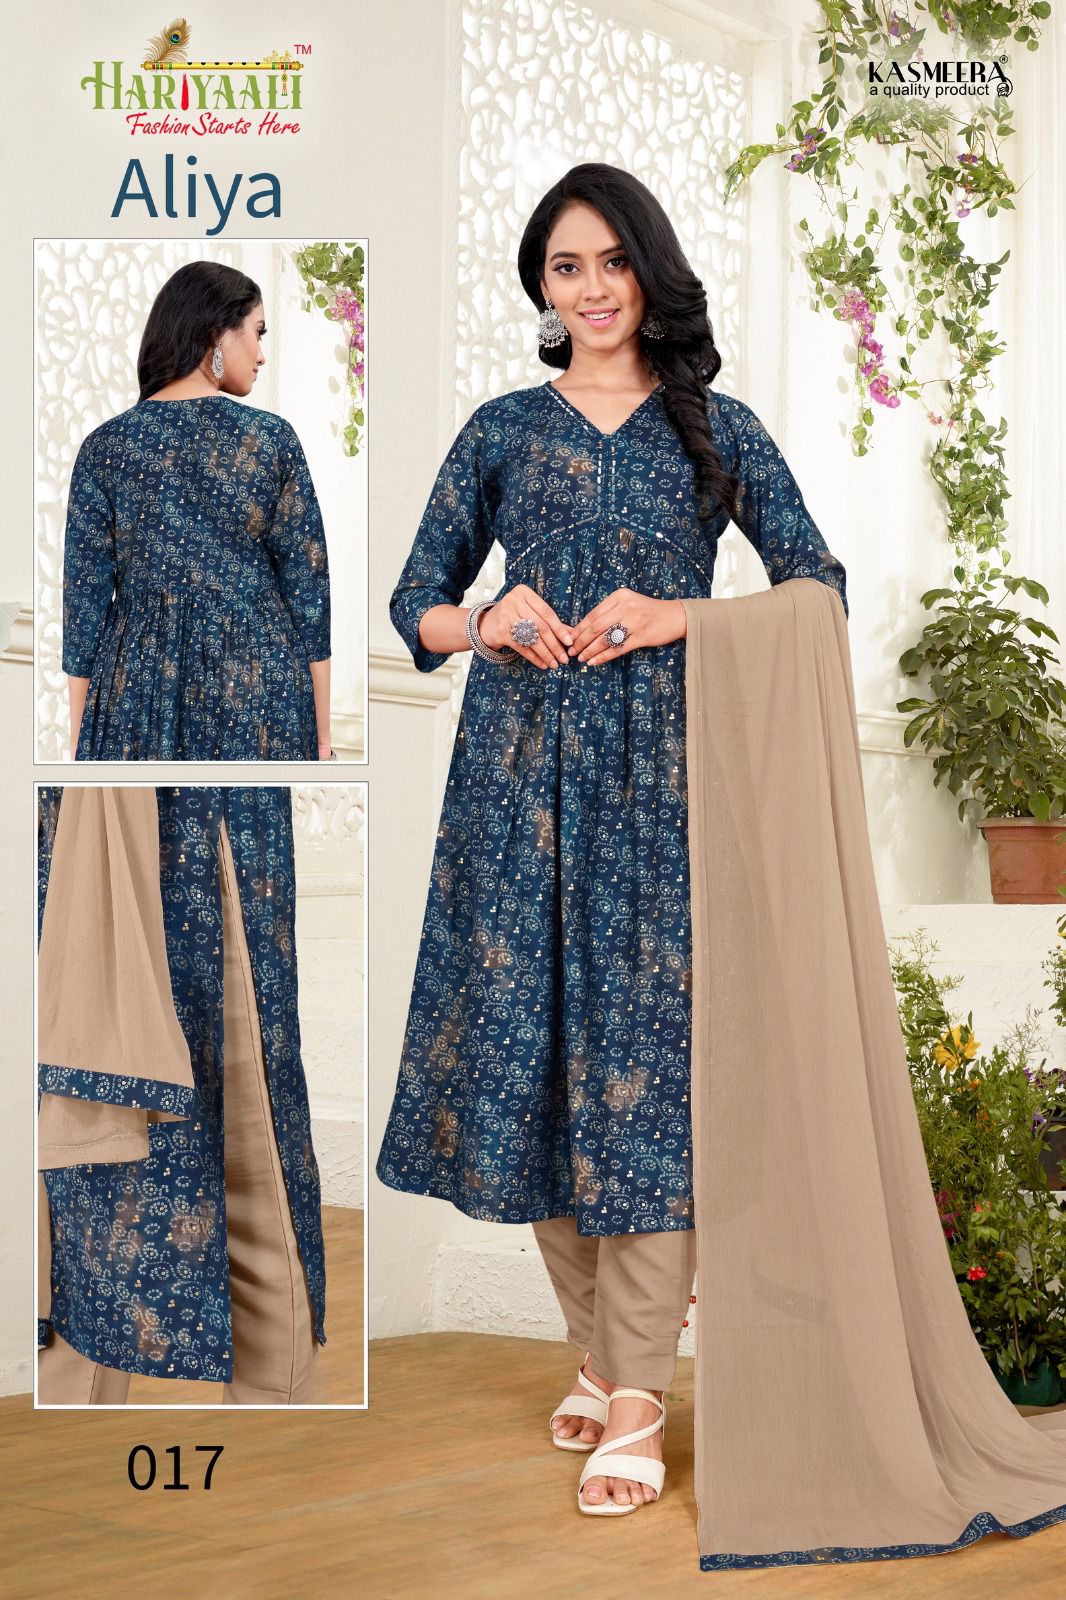 hariyaali aaliya vol 1 silk decent look top bottom with dupatta pick n choose